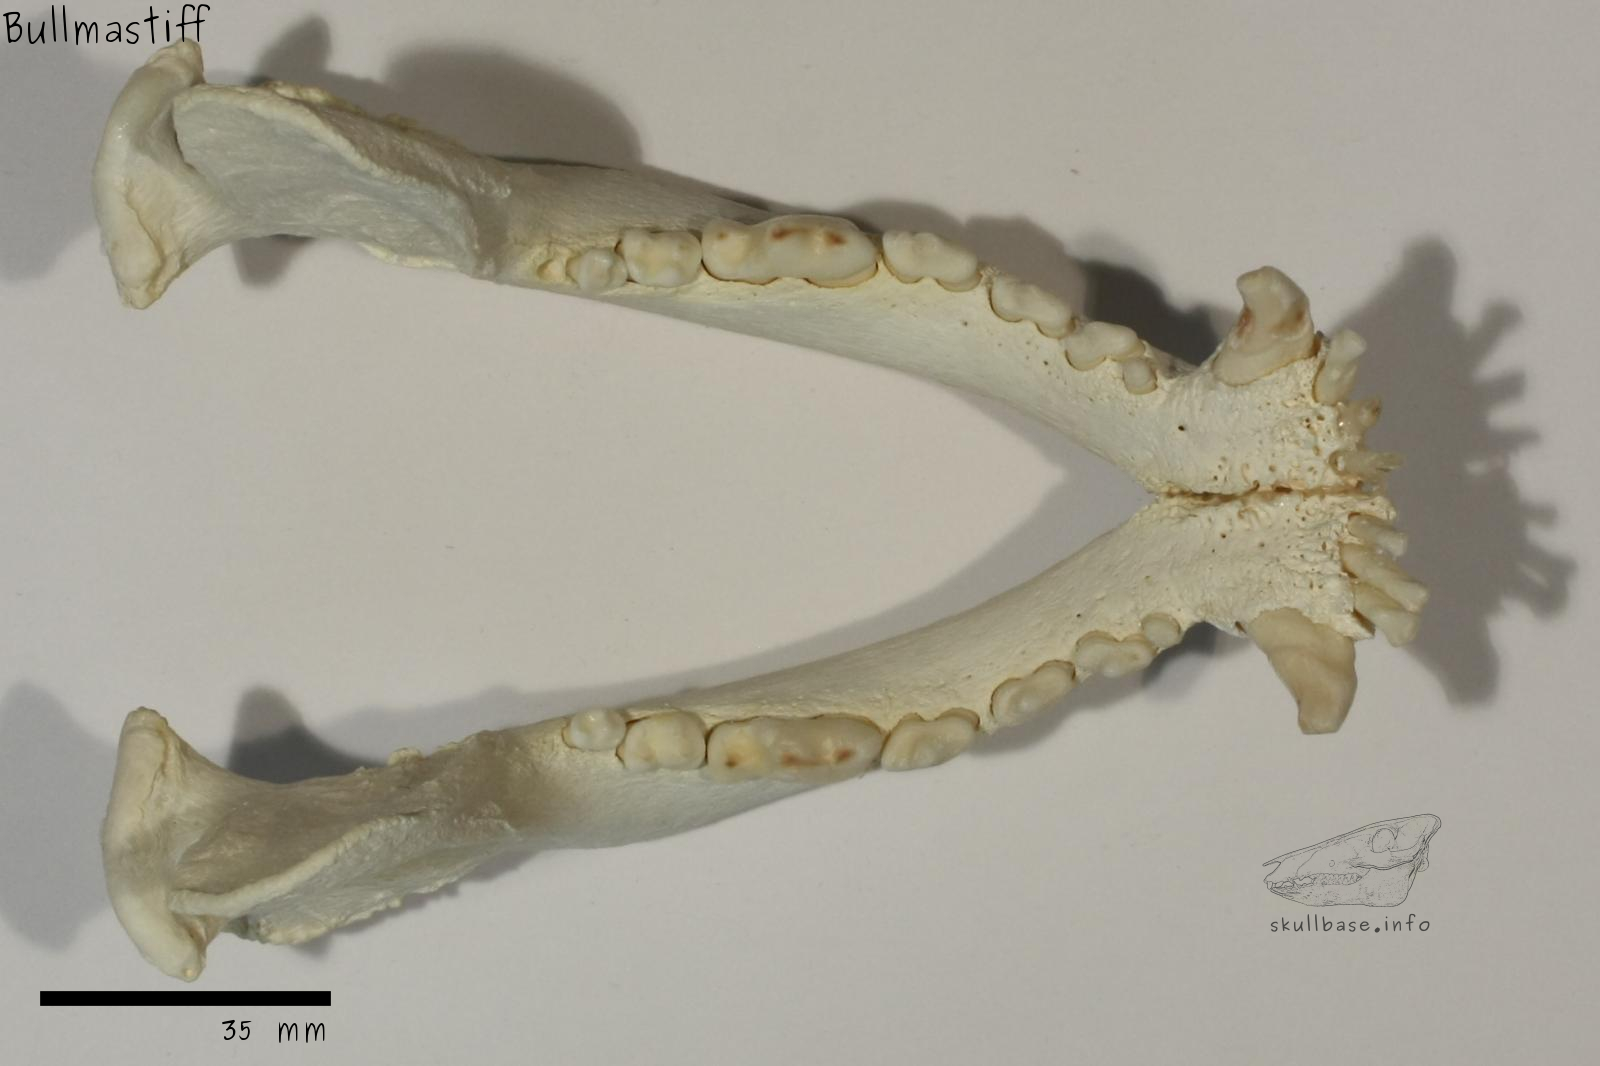 Bullmastiff (Canis lupus familiaris) jaw